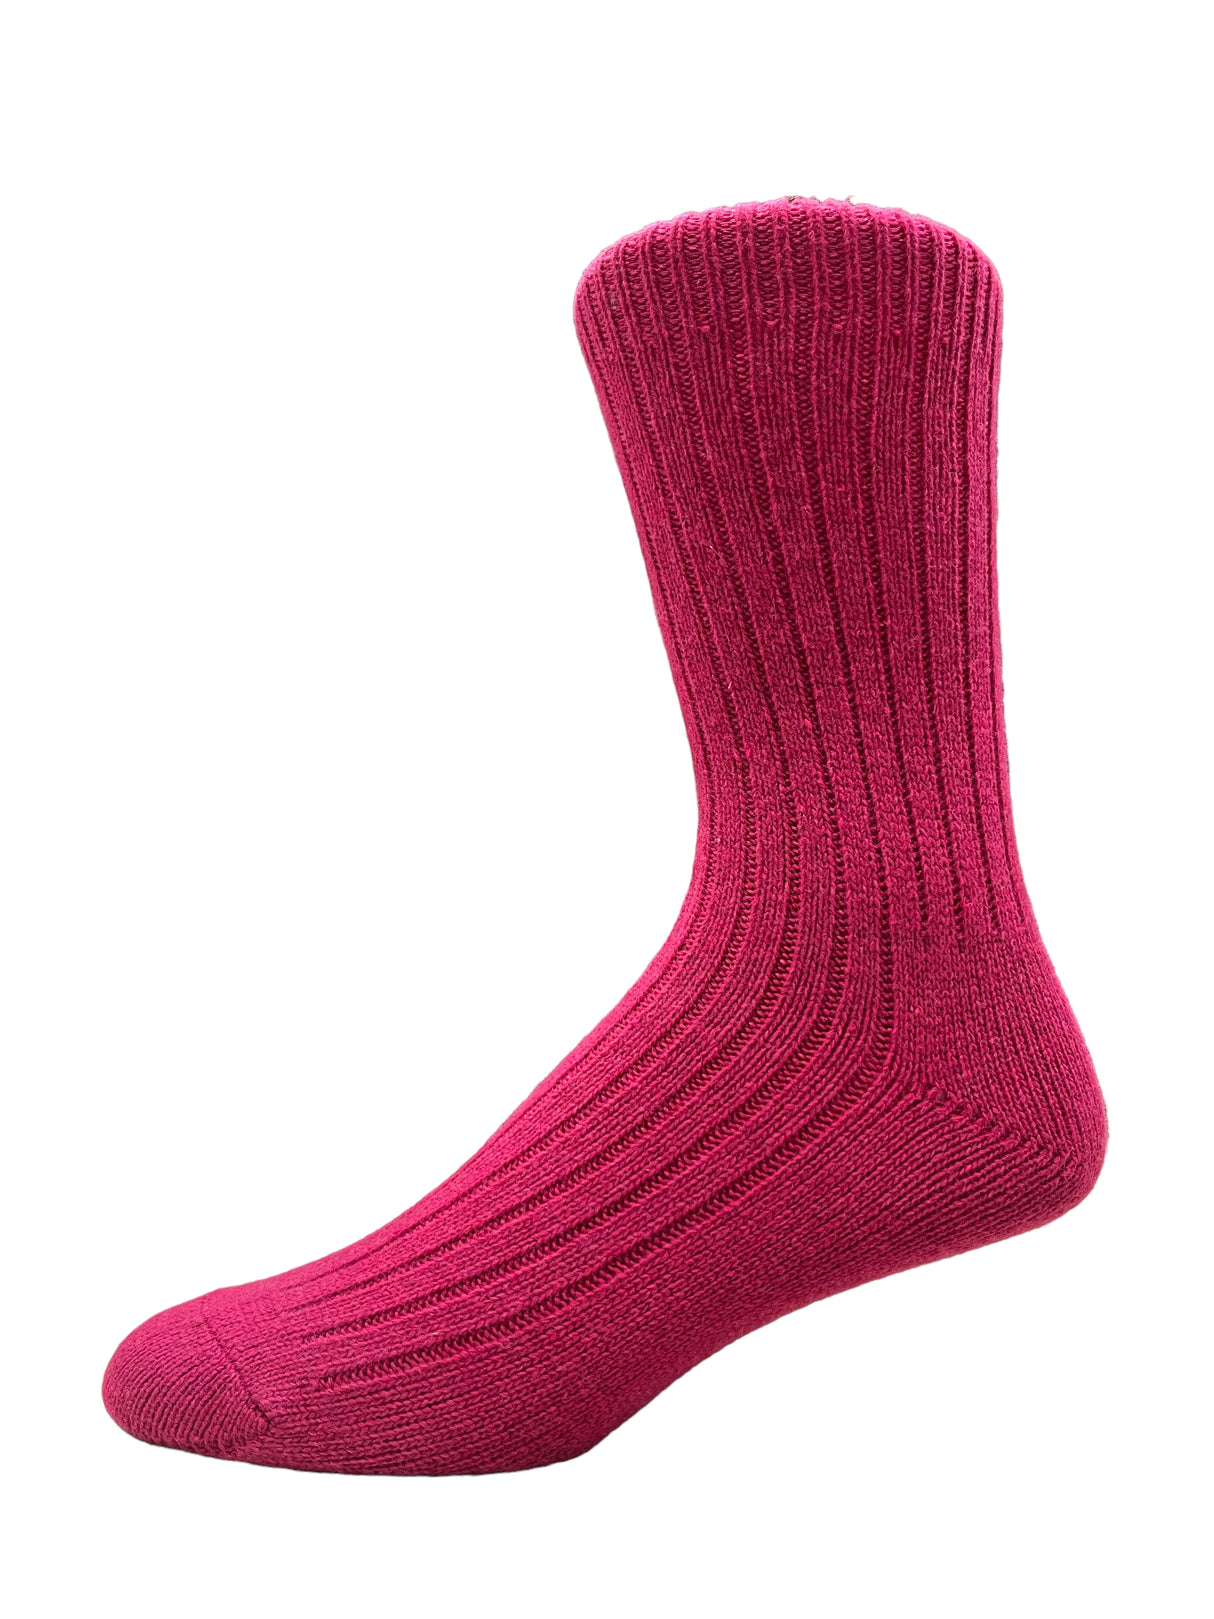 Irish Merino Wool Socks